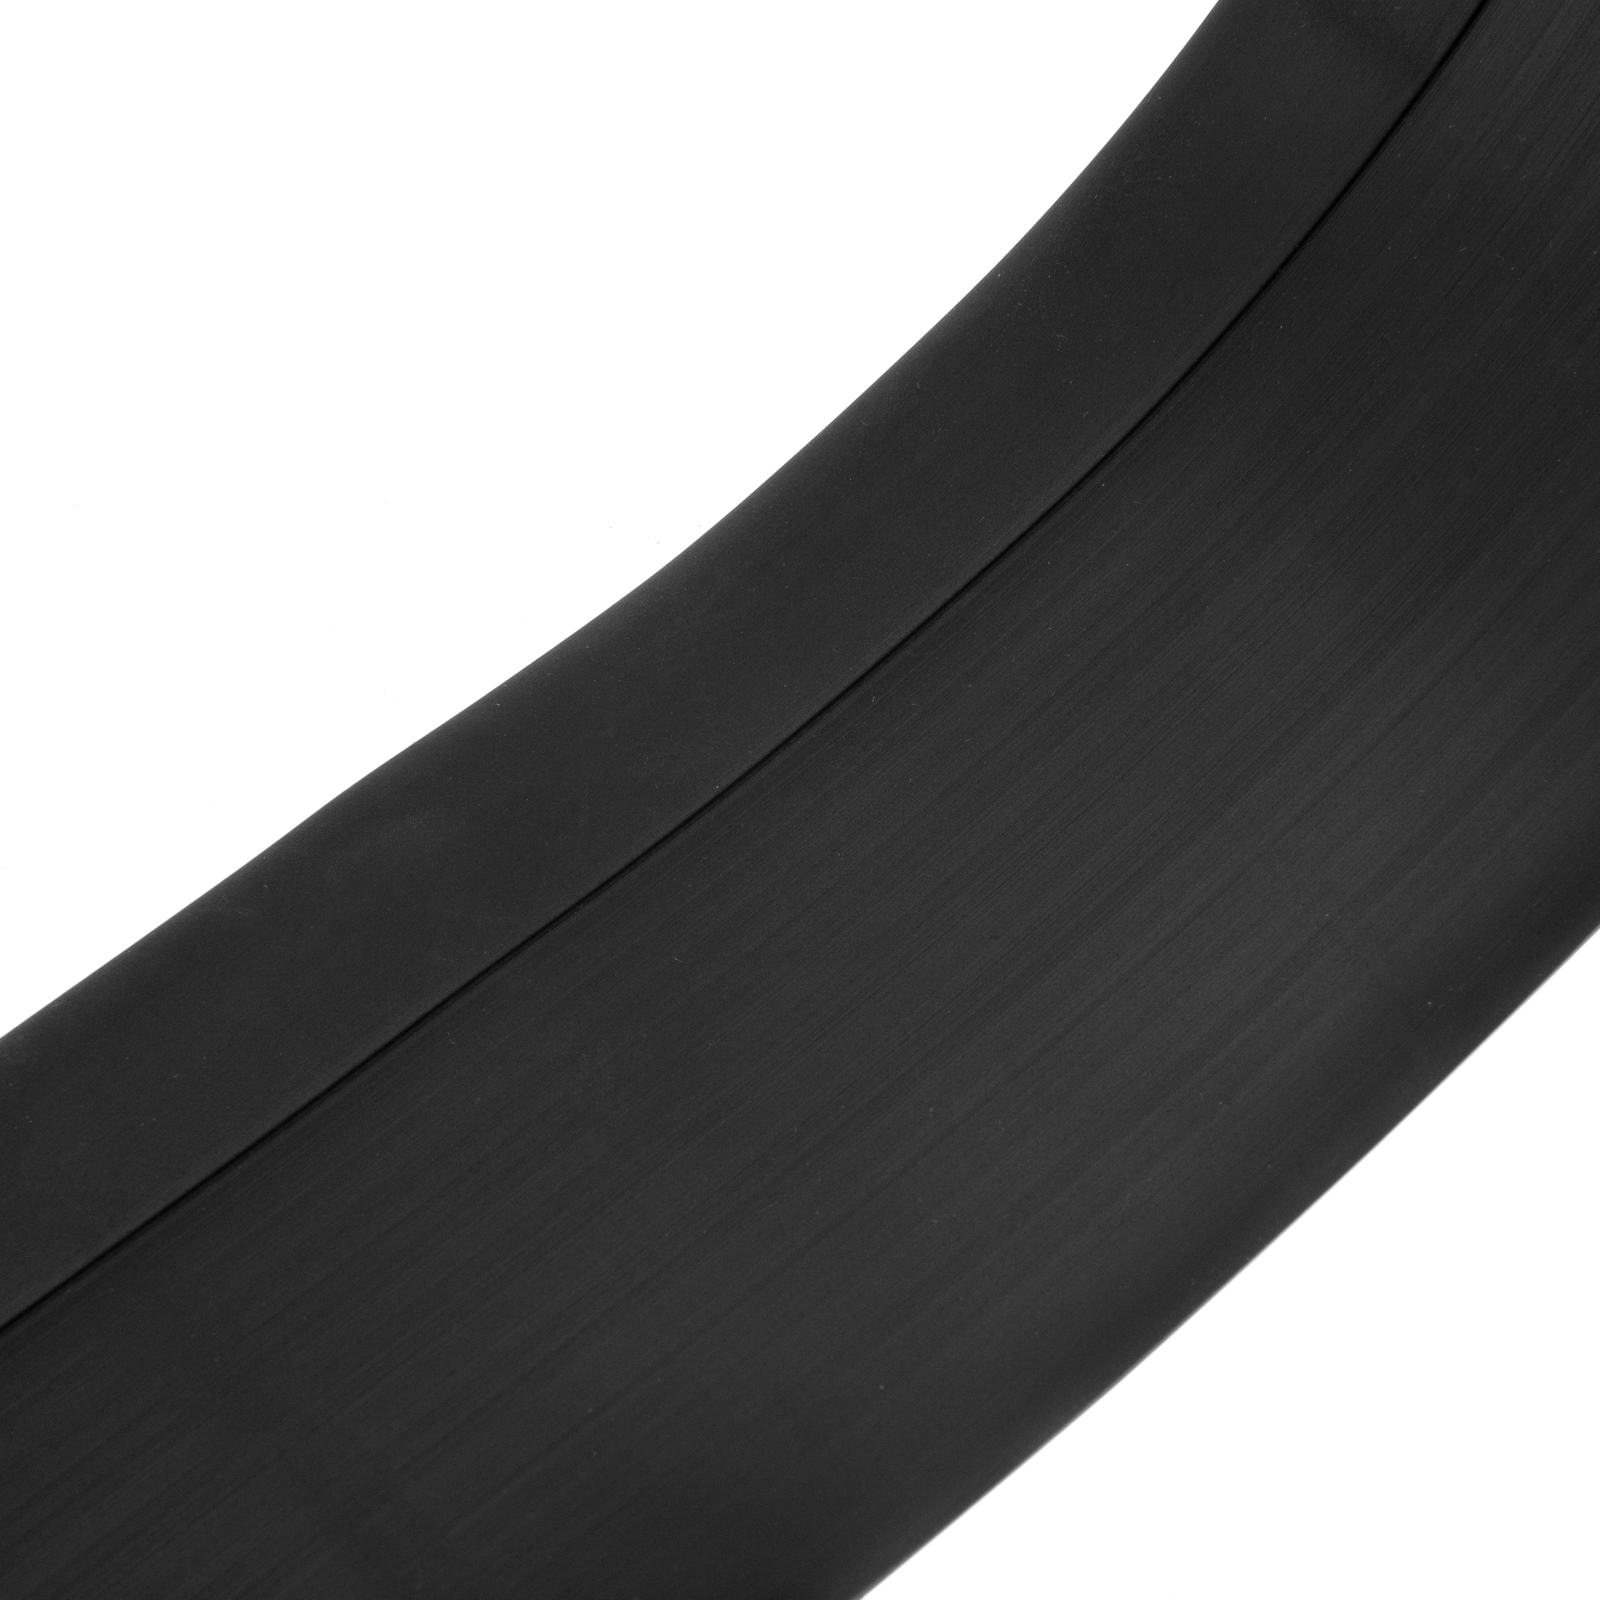 Plinthe Flexible Adhésive en PVC souple Bande de finition Ruban autocollant  50x20mm Gris clair